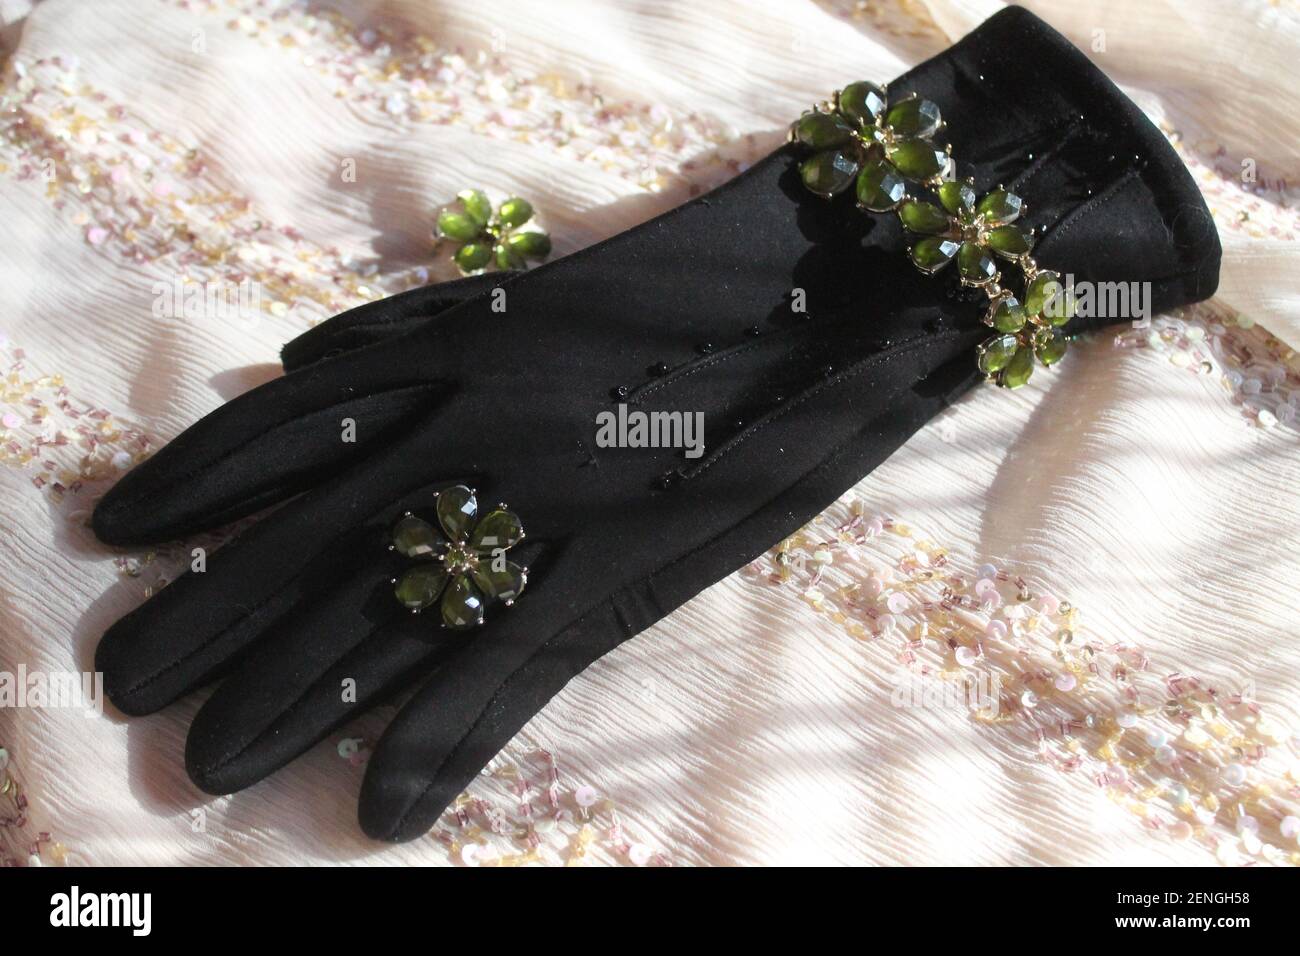 hermosa pulsera de joyas y anillo en forma de margarita acostarse en el guante negro de la mujer Foto de stock